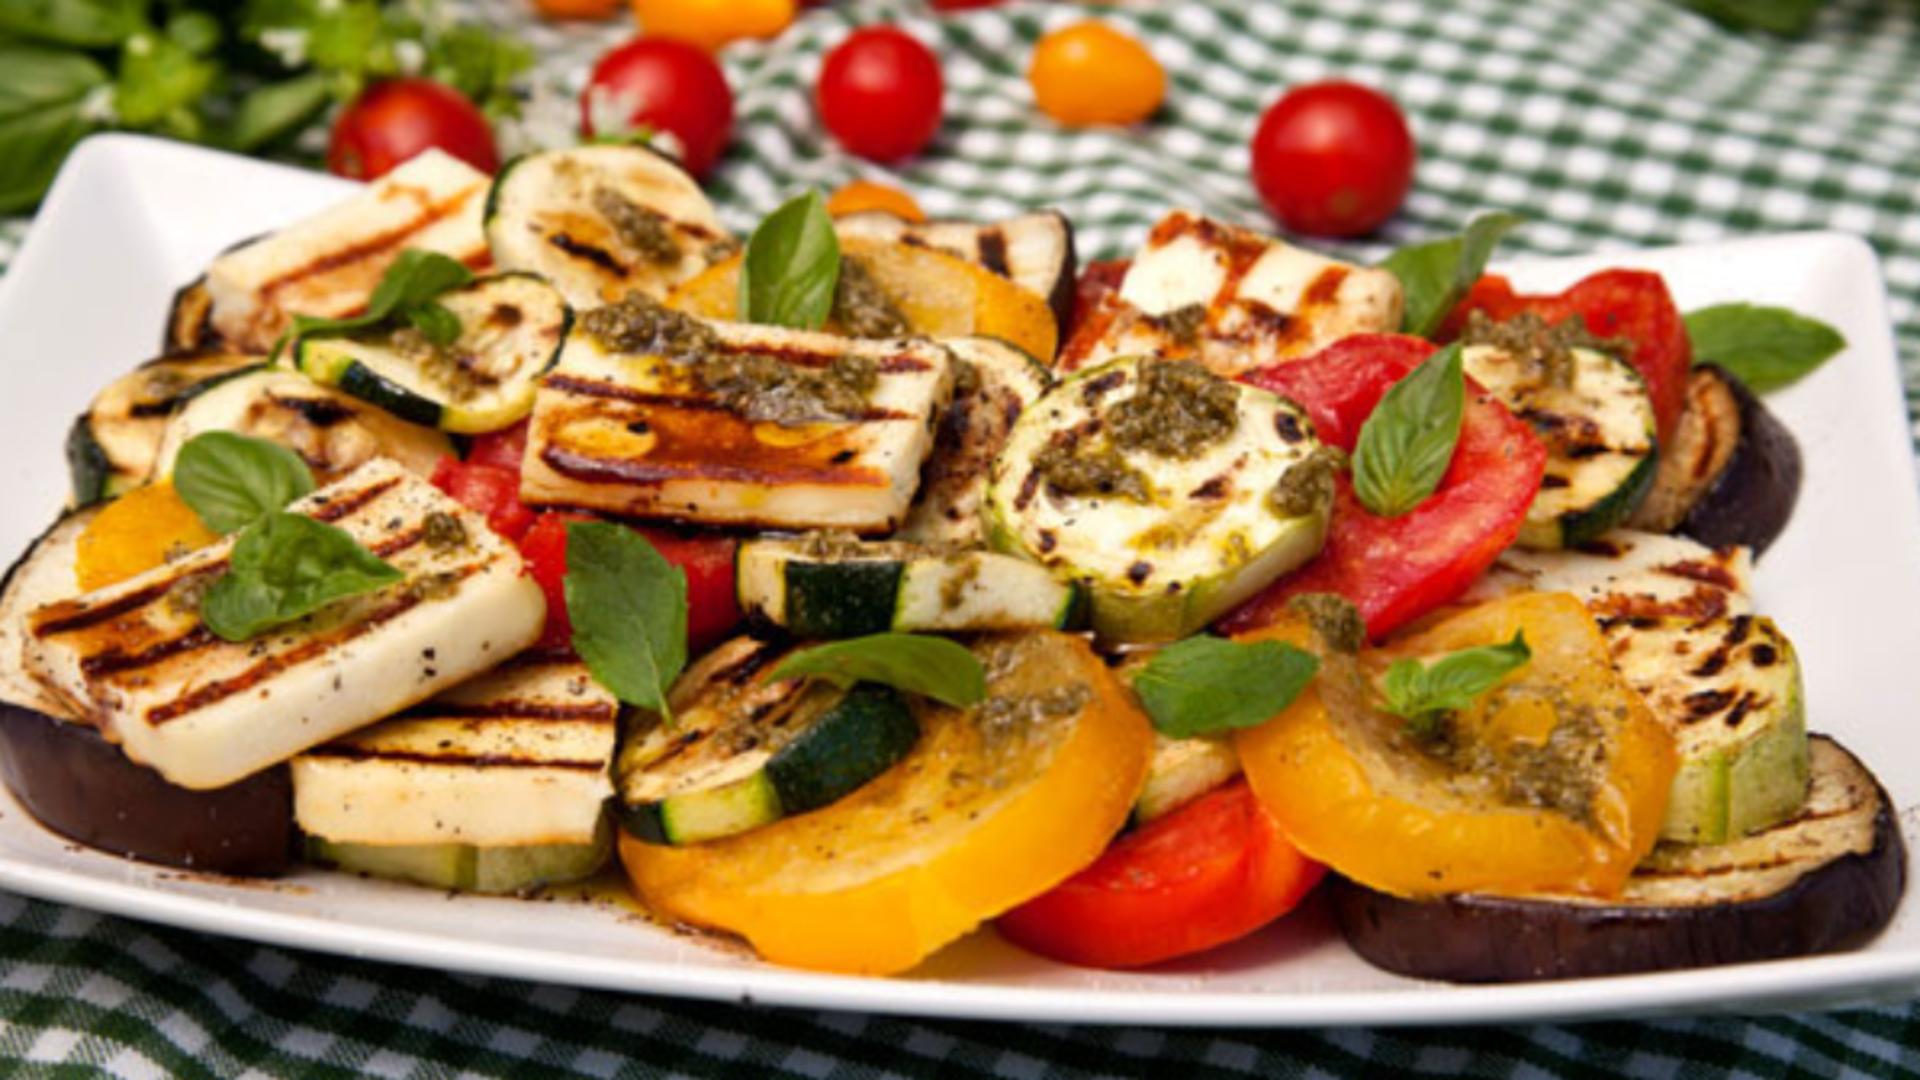 Salata de legume și brânză la grătar – Este delicioasă cu cele 3 ingrediente speciale